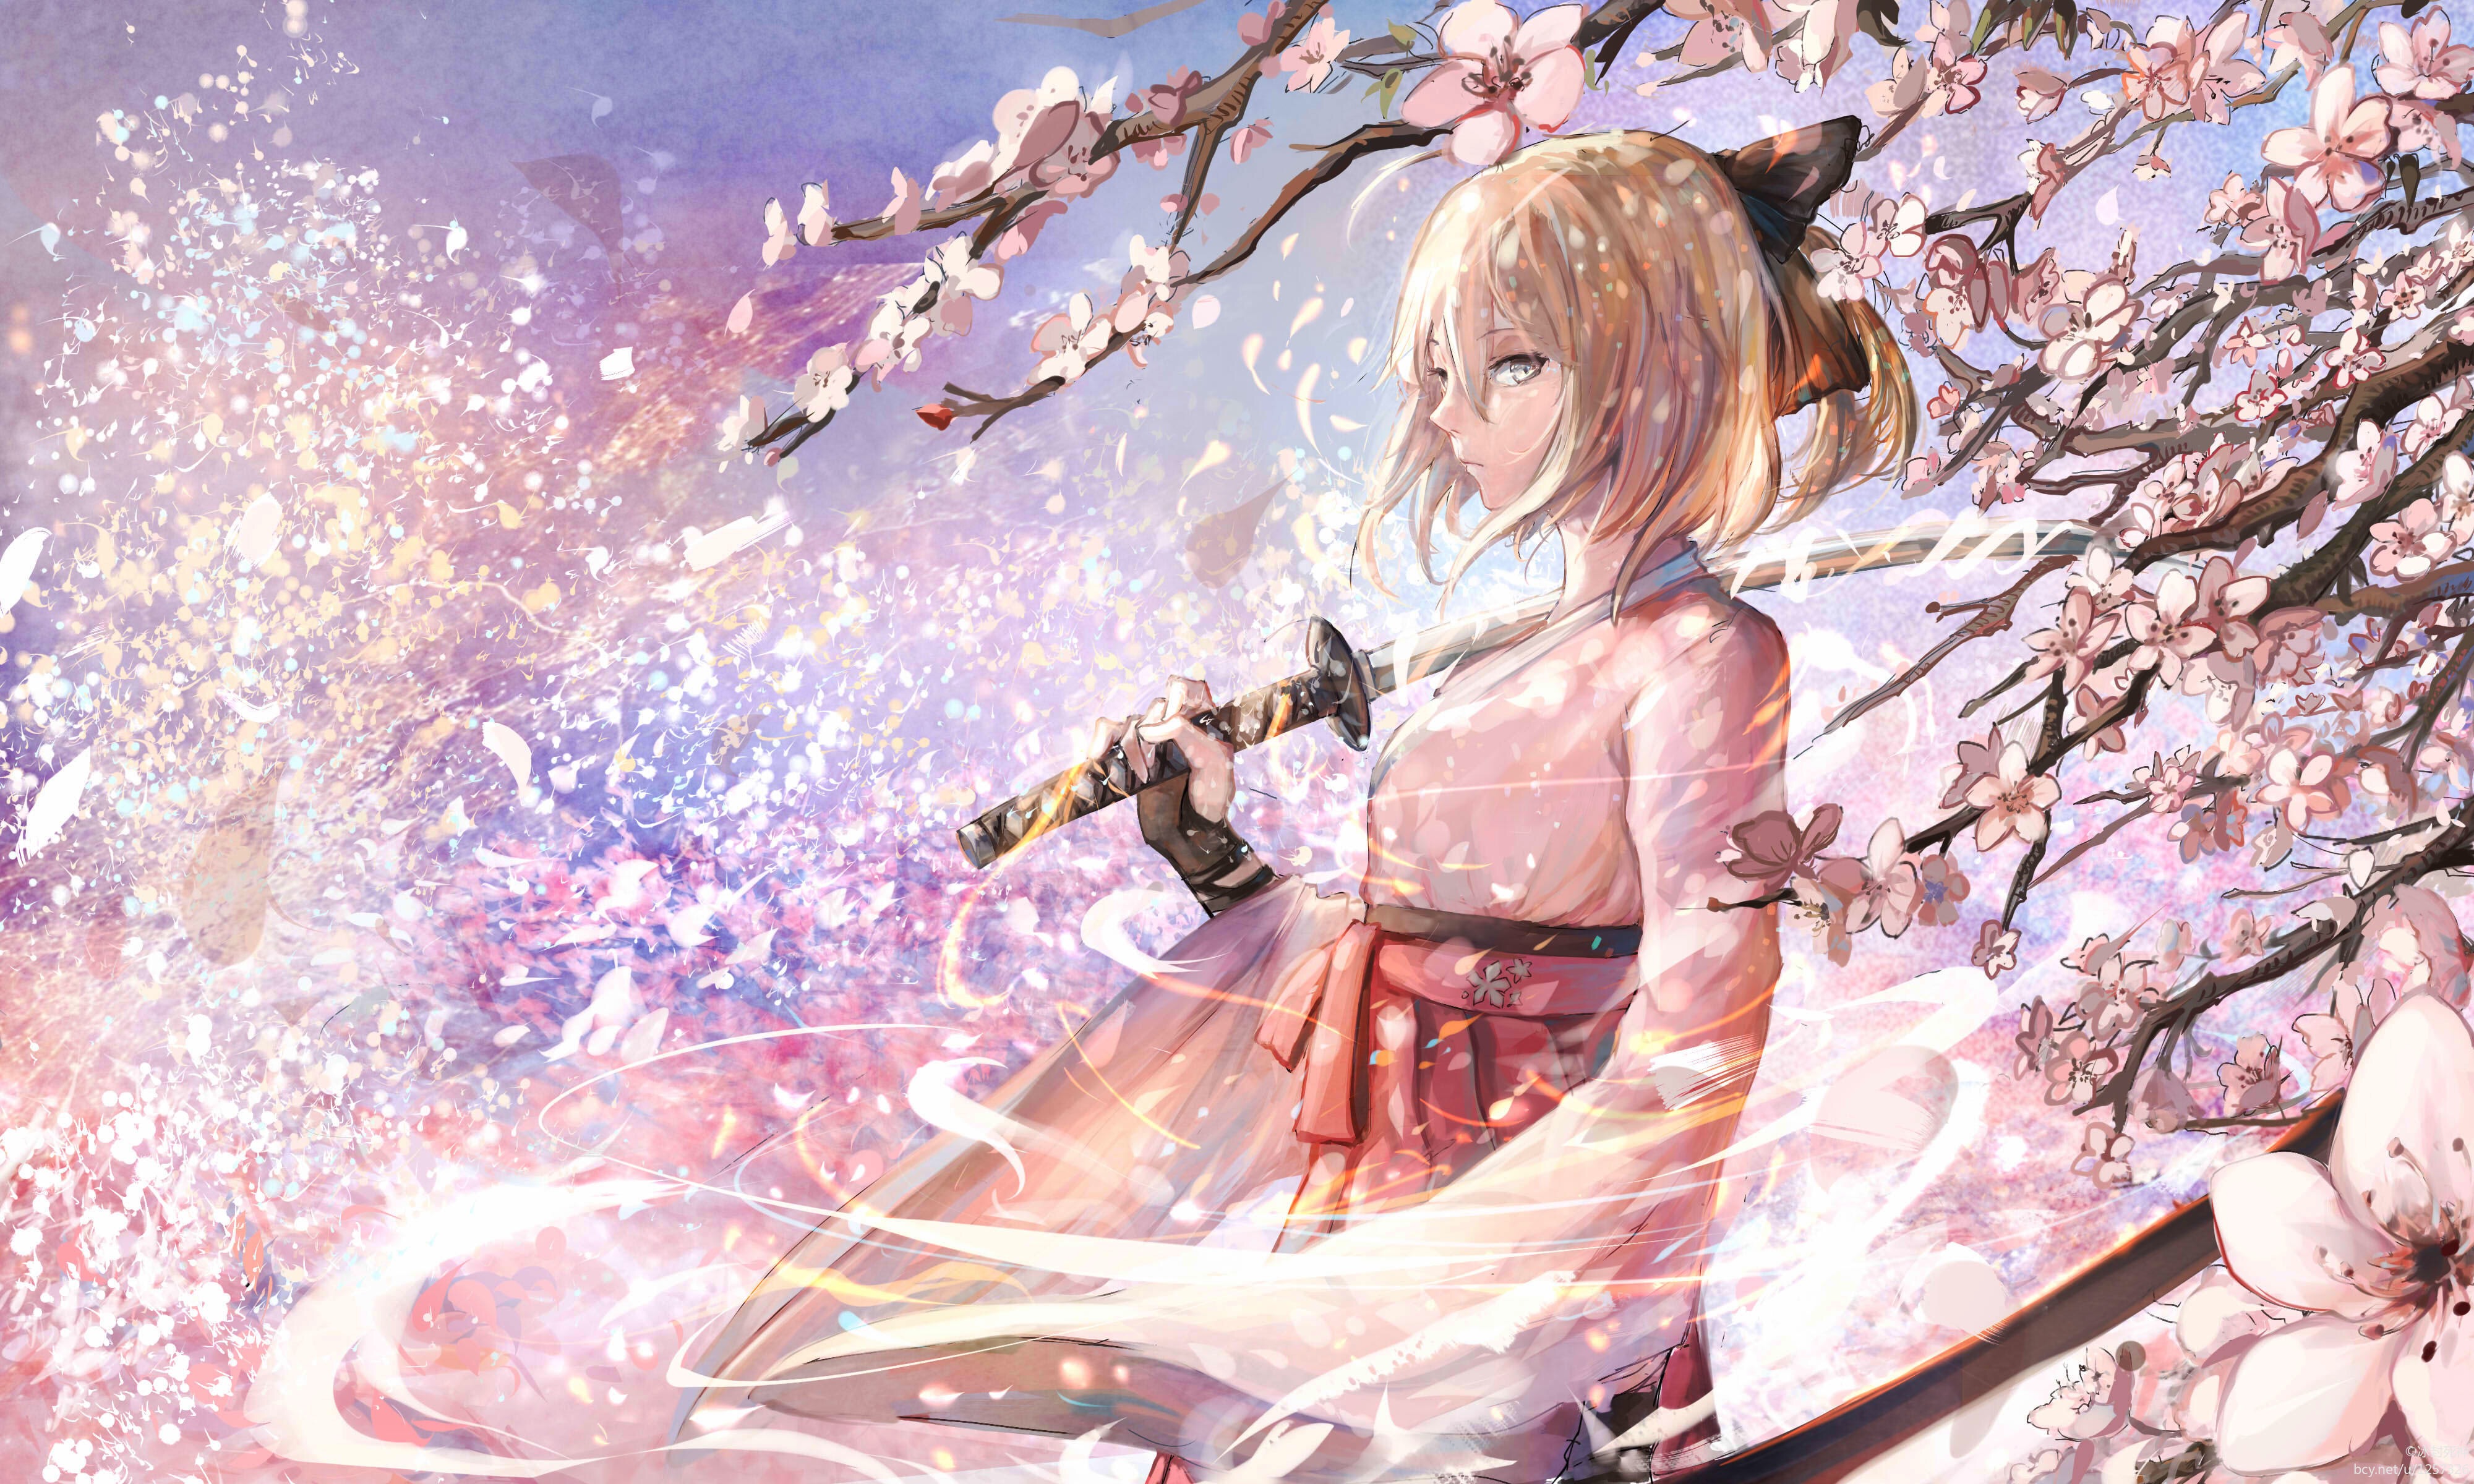 fate/grand order, saber (fate series), fate series, blonde, anime, fate (series), katana, kimono, okita sōji, sakura blossom images